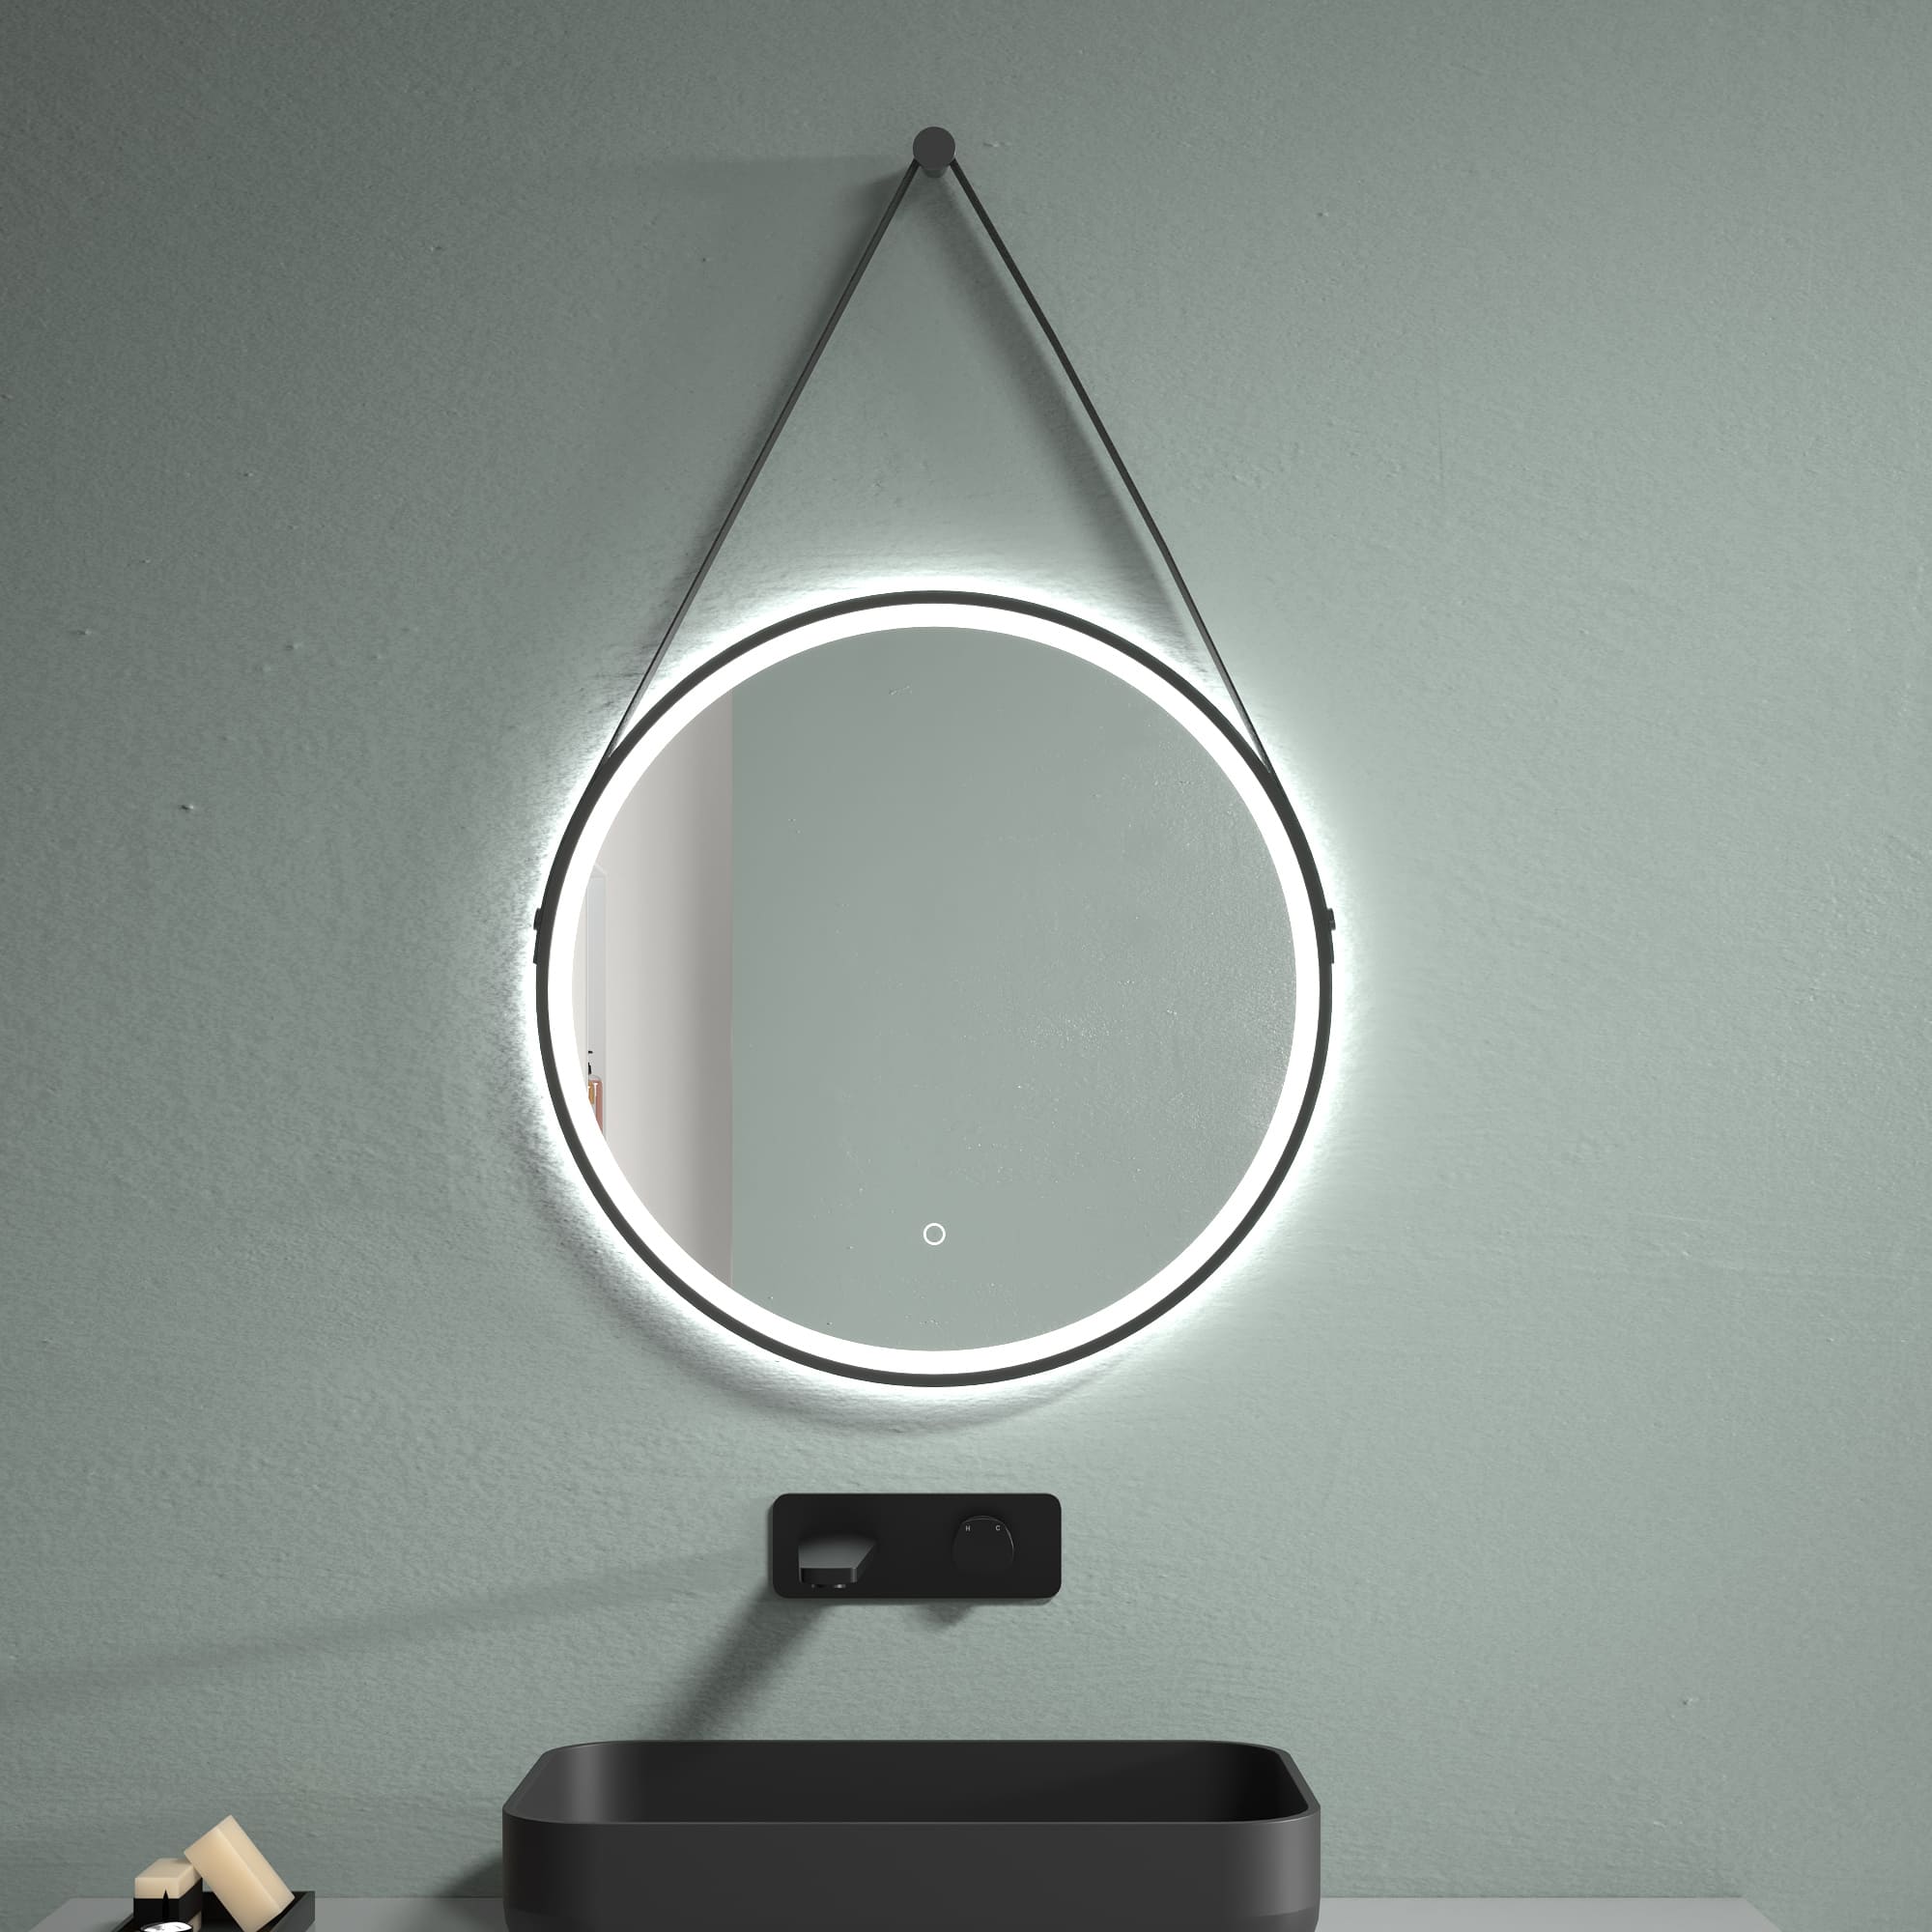 LED Spiegel Antifrost Ø 60 oder 80 Schwarz Matt Warm-/Kaltlichteinstellung Badspiegel Lederschleife